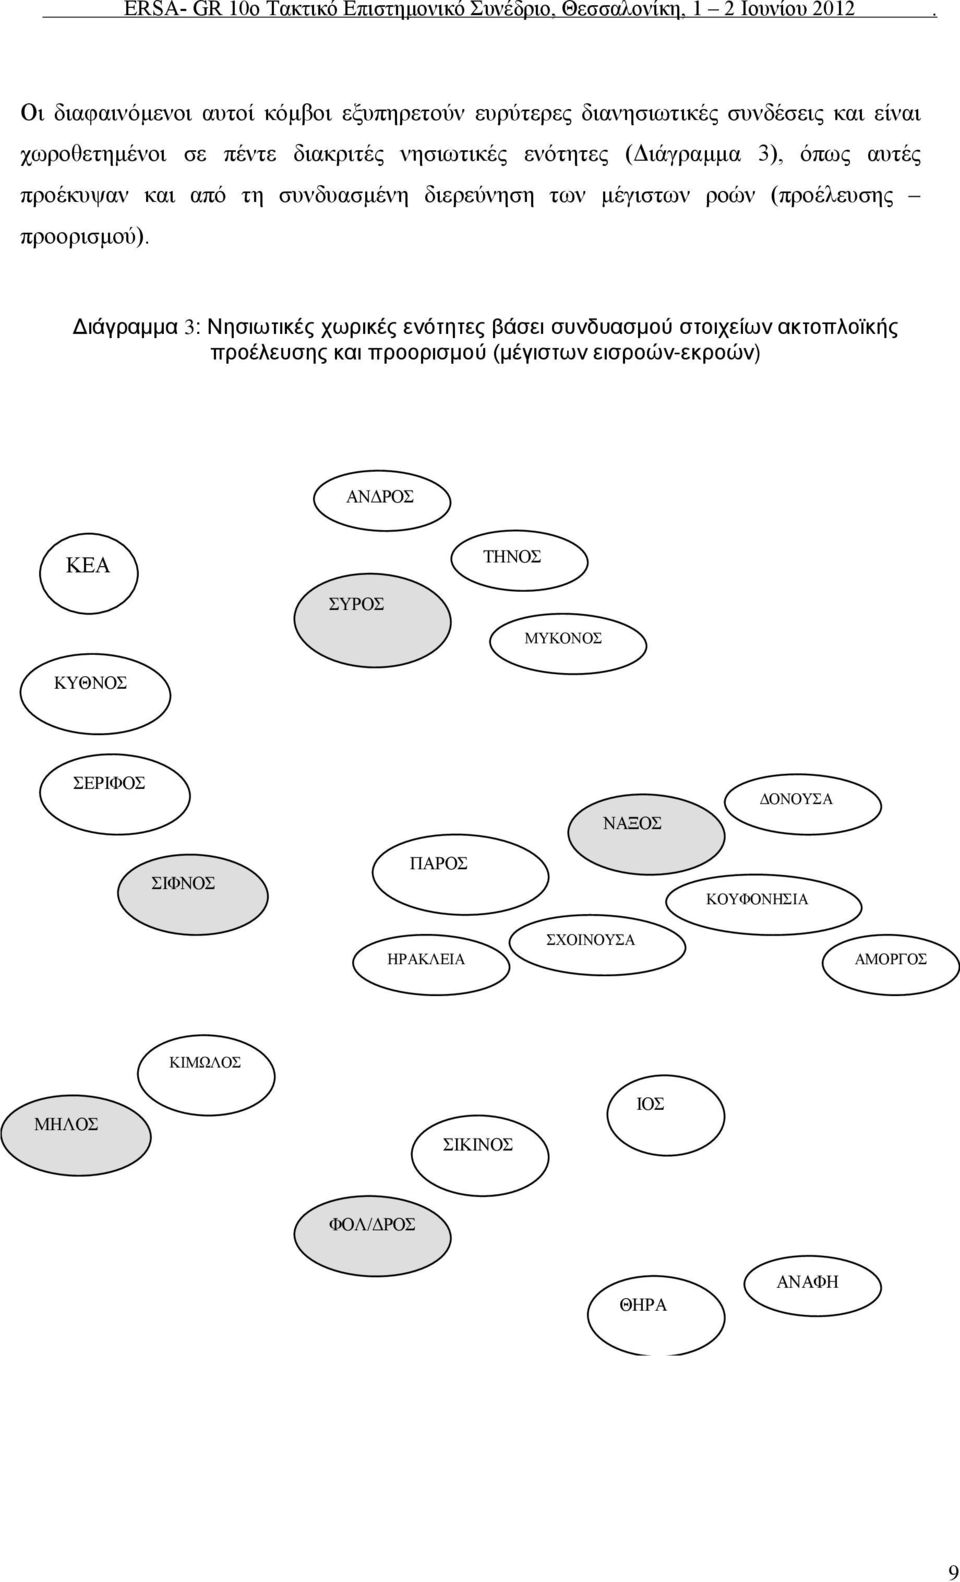 Διάγραμμα 3: Νησιωτικές χωρικές ενότητες βάσει συνδυασμού στοιχείων ακτοπλοϊκής προέλευσης και προορισμού (μέγιστων εισροών-εκροών)